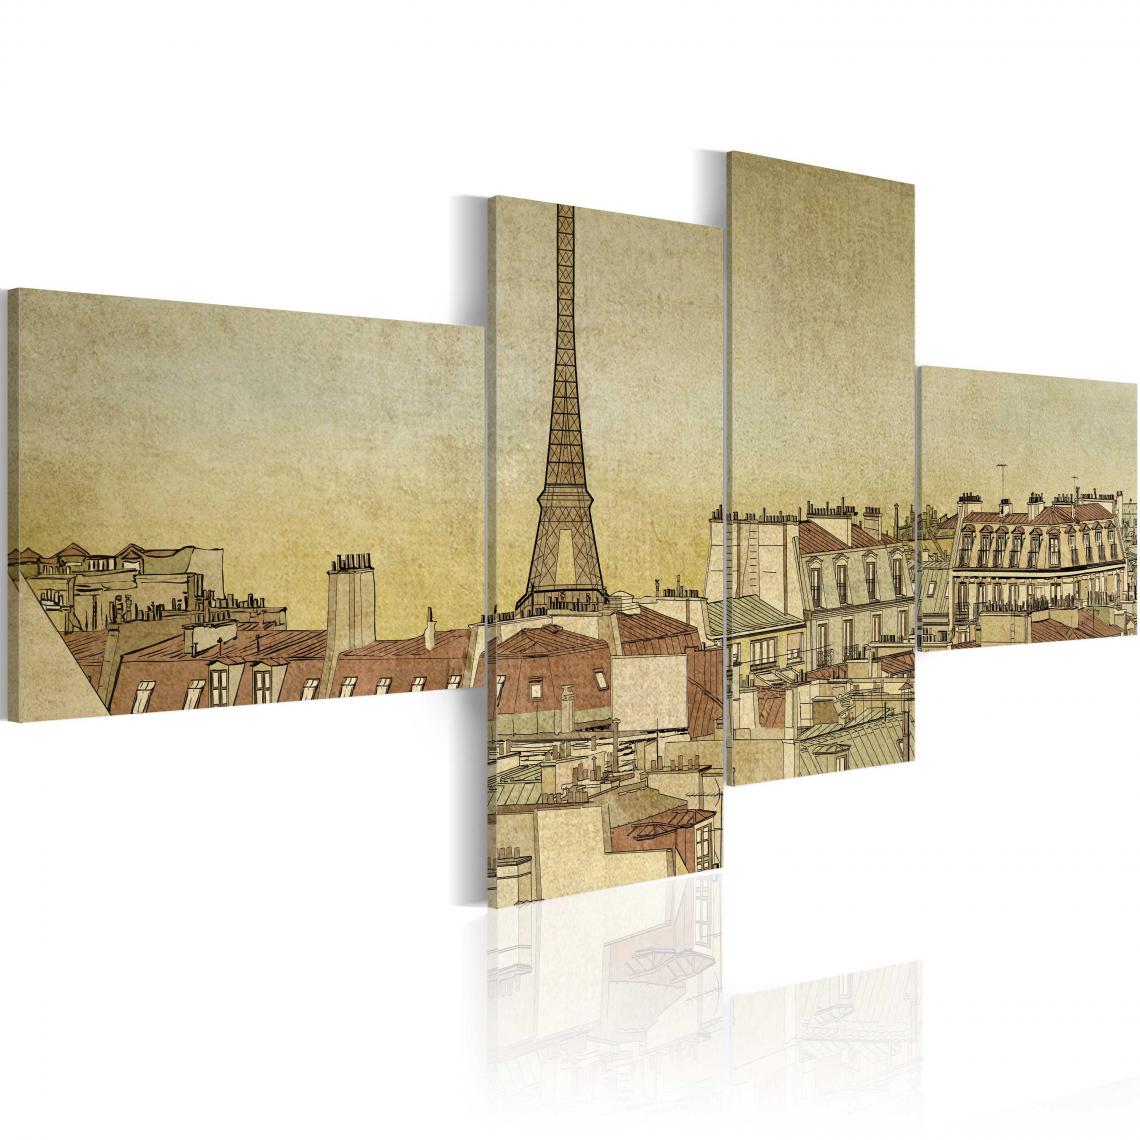 Decoshop26 - Tableau sur toile en 4 panneaux décoration murale image imprimée cadre en bois à suspendre Chic parisien dans un style rétro 100x45 cm 11_0008164 - Tableaux, peintures